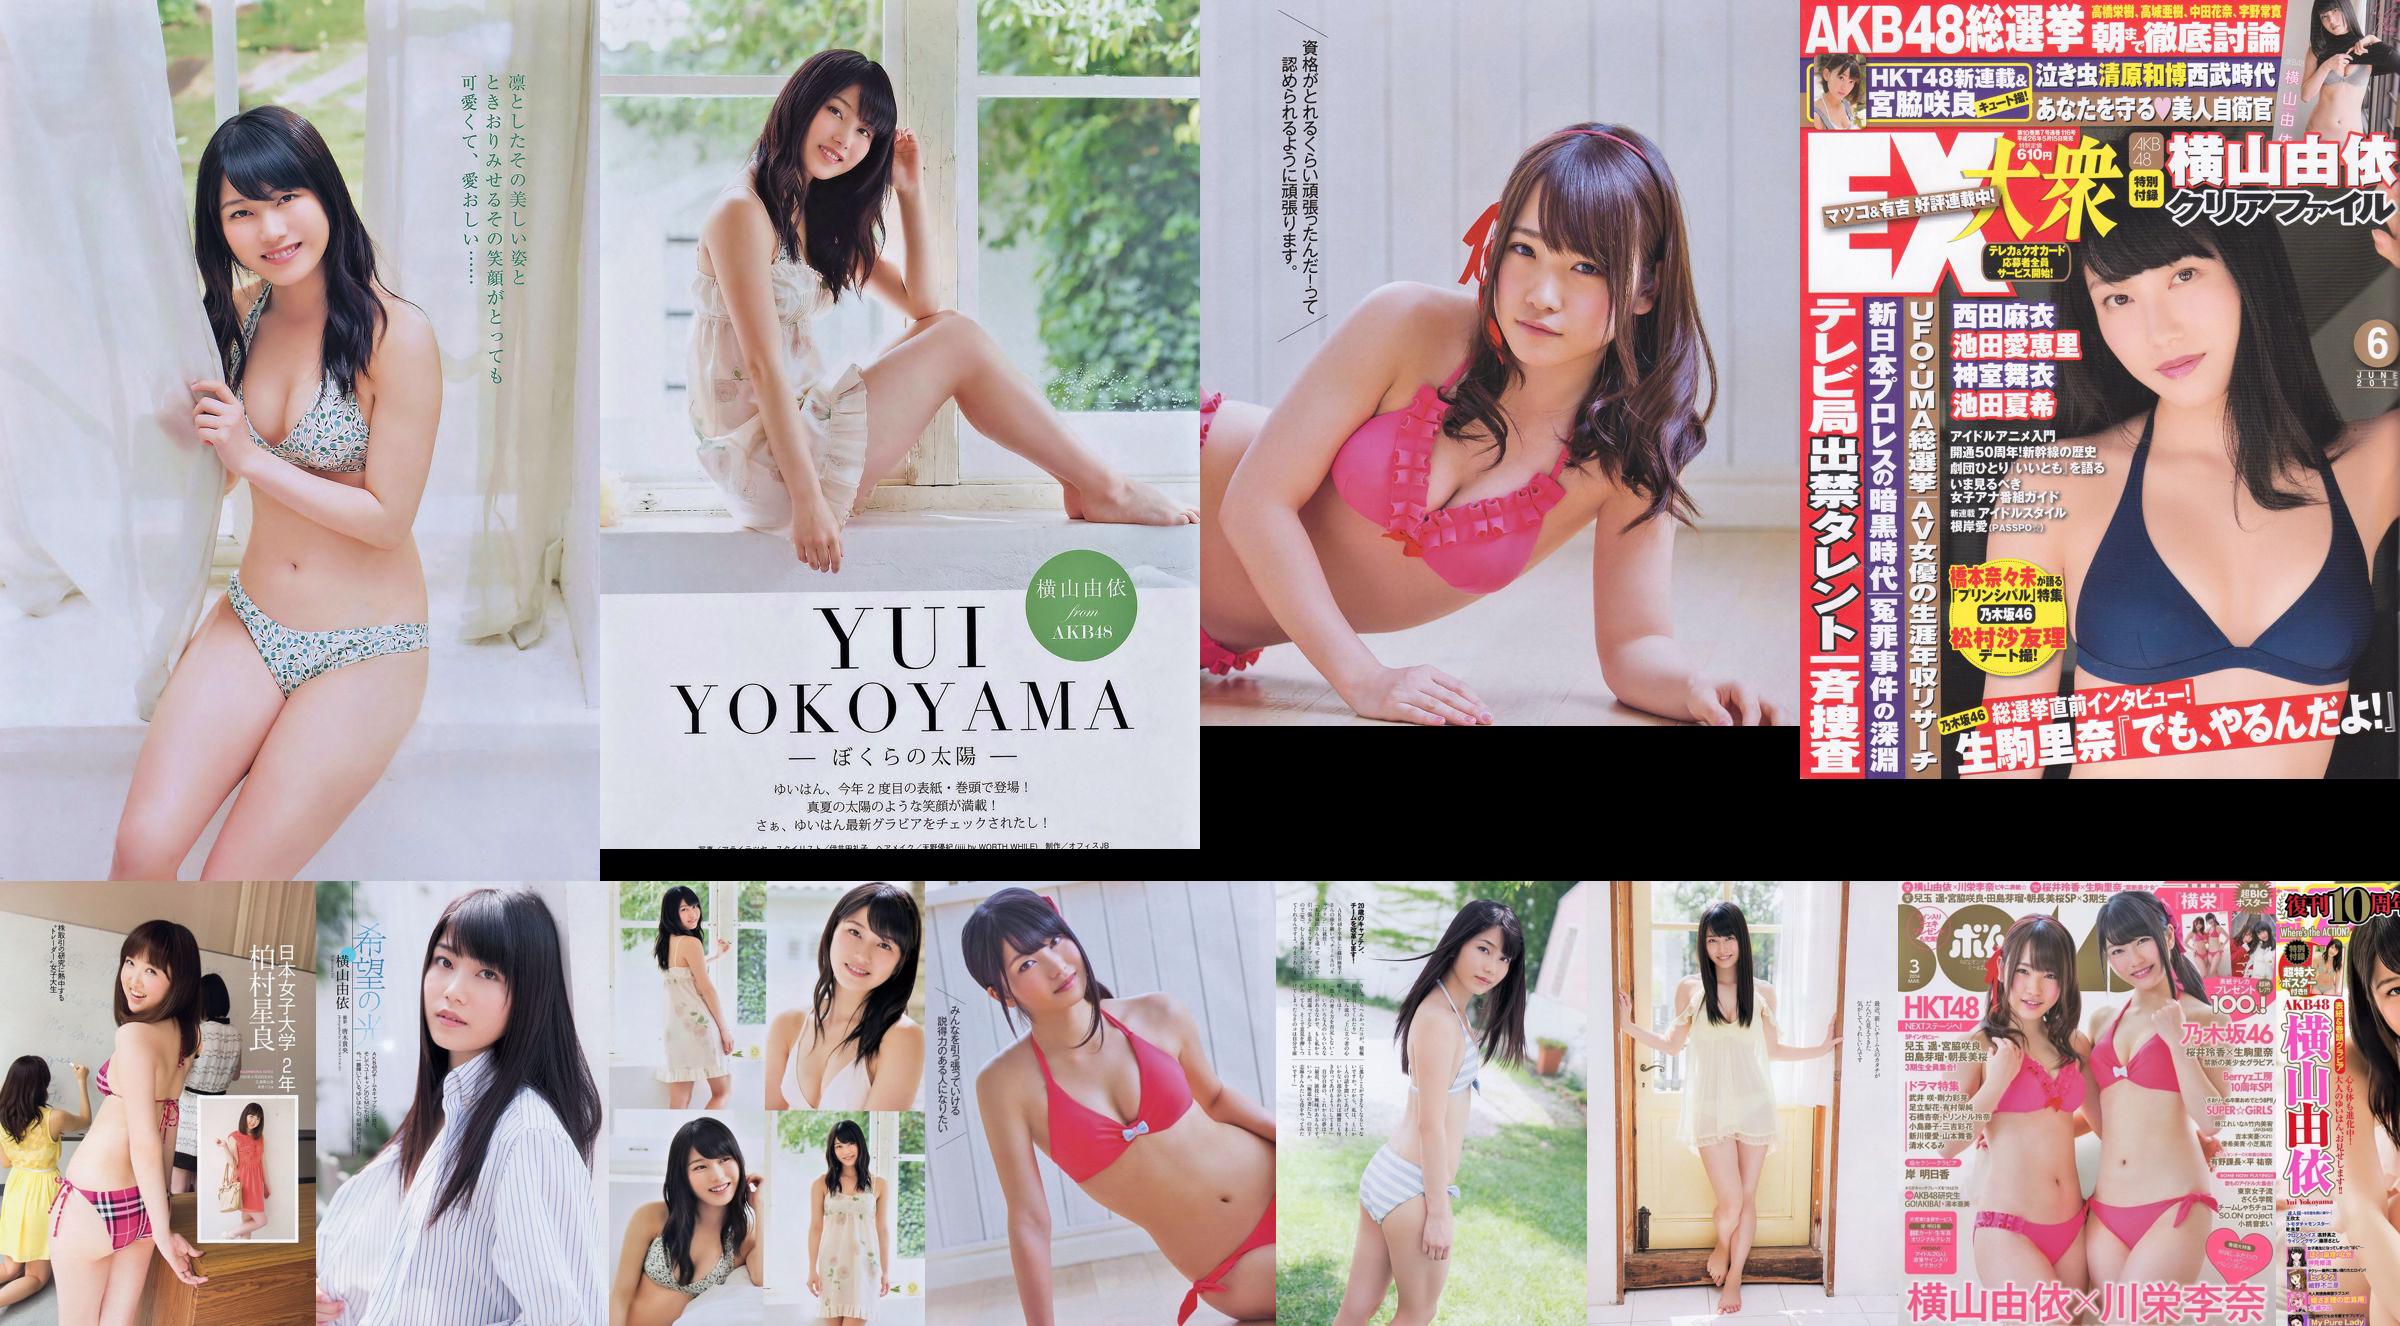 Yui Yokoyama Nozomi Sasaki Rina Koike Asuka Kuramochi Miwako Kakei Risa Yoshiki Ruri Shinato [Weekly Playboy] 2013 No.38 Photographie No.1cbdbd Page 19